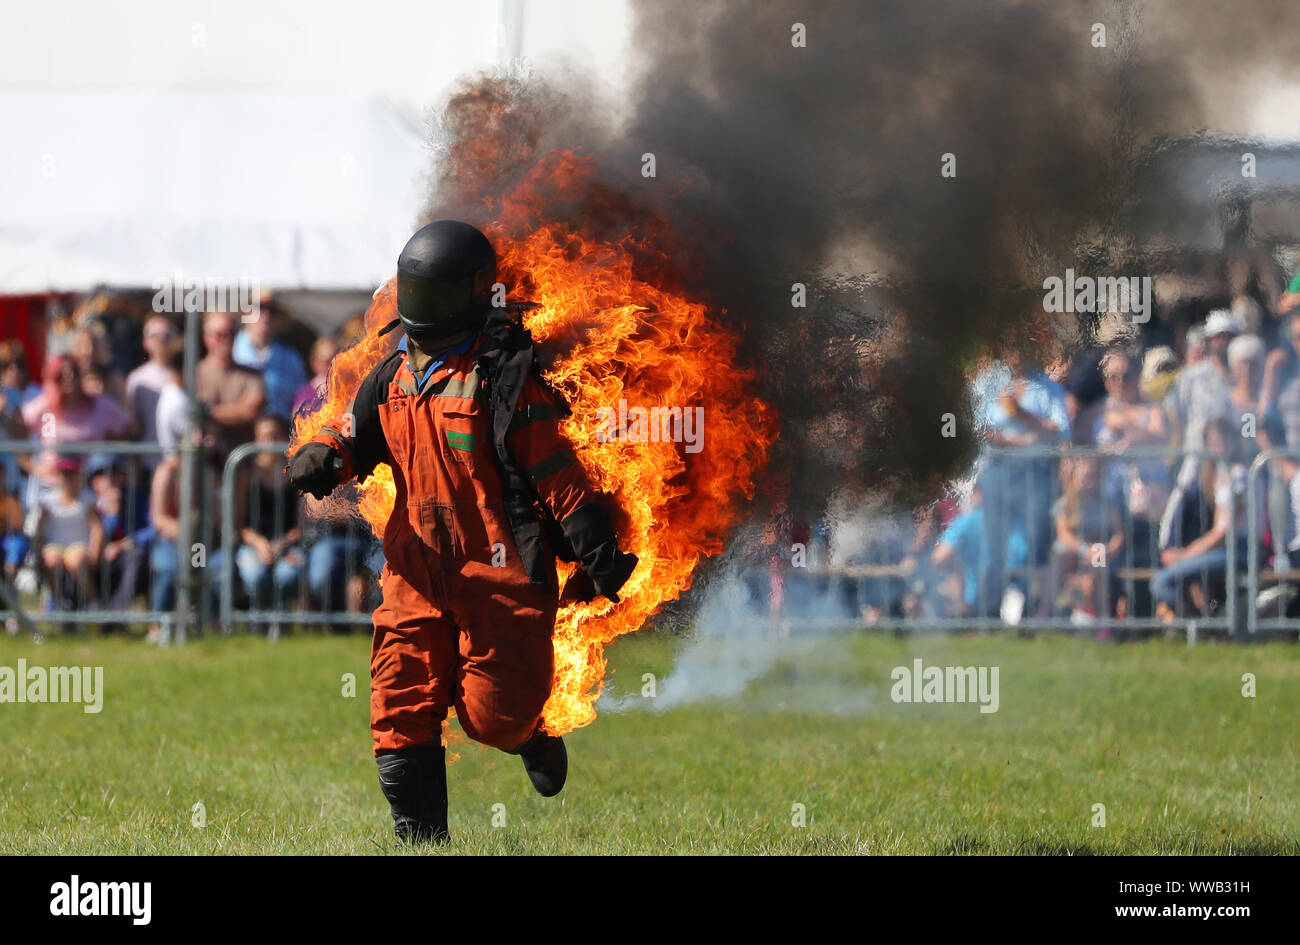 Uno Stuntman sul fuoco durante un display a un paese mostra nel Regno Unito Foto Stock